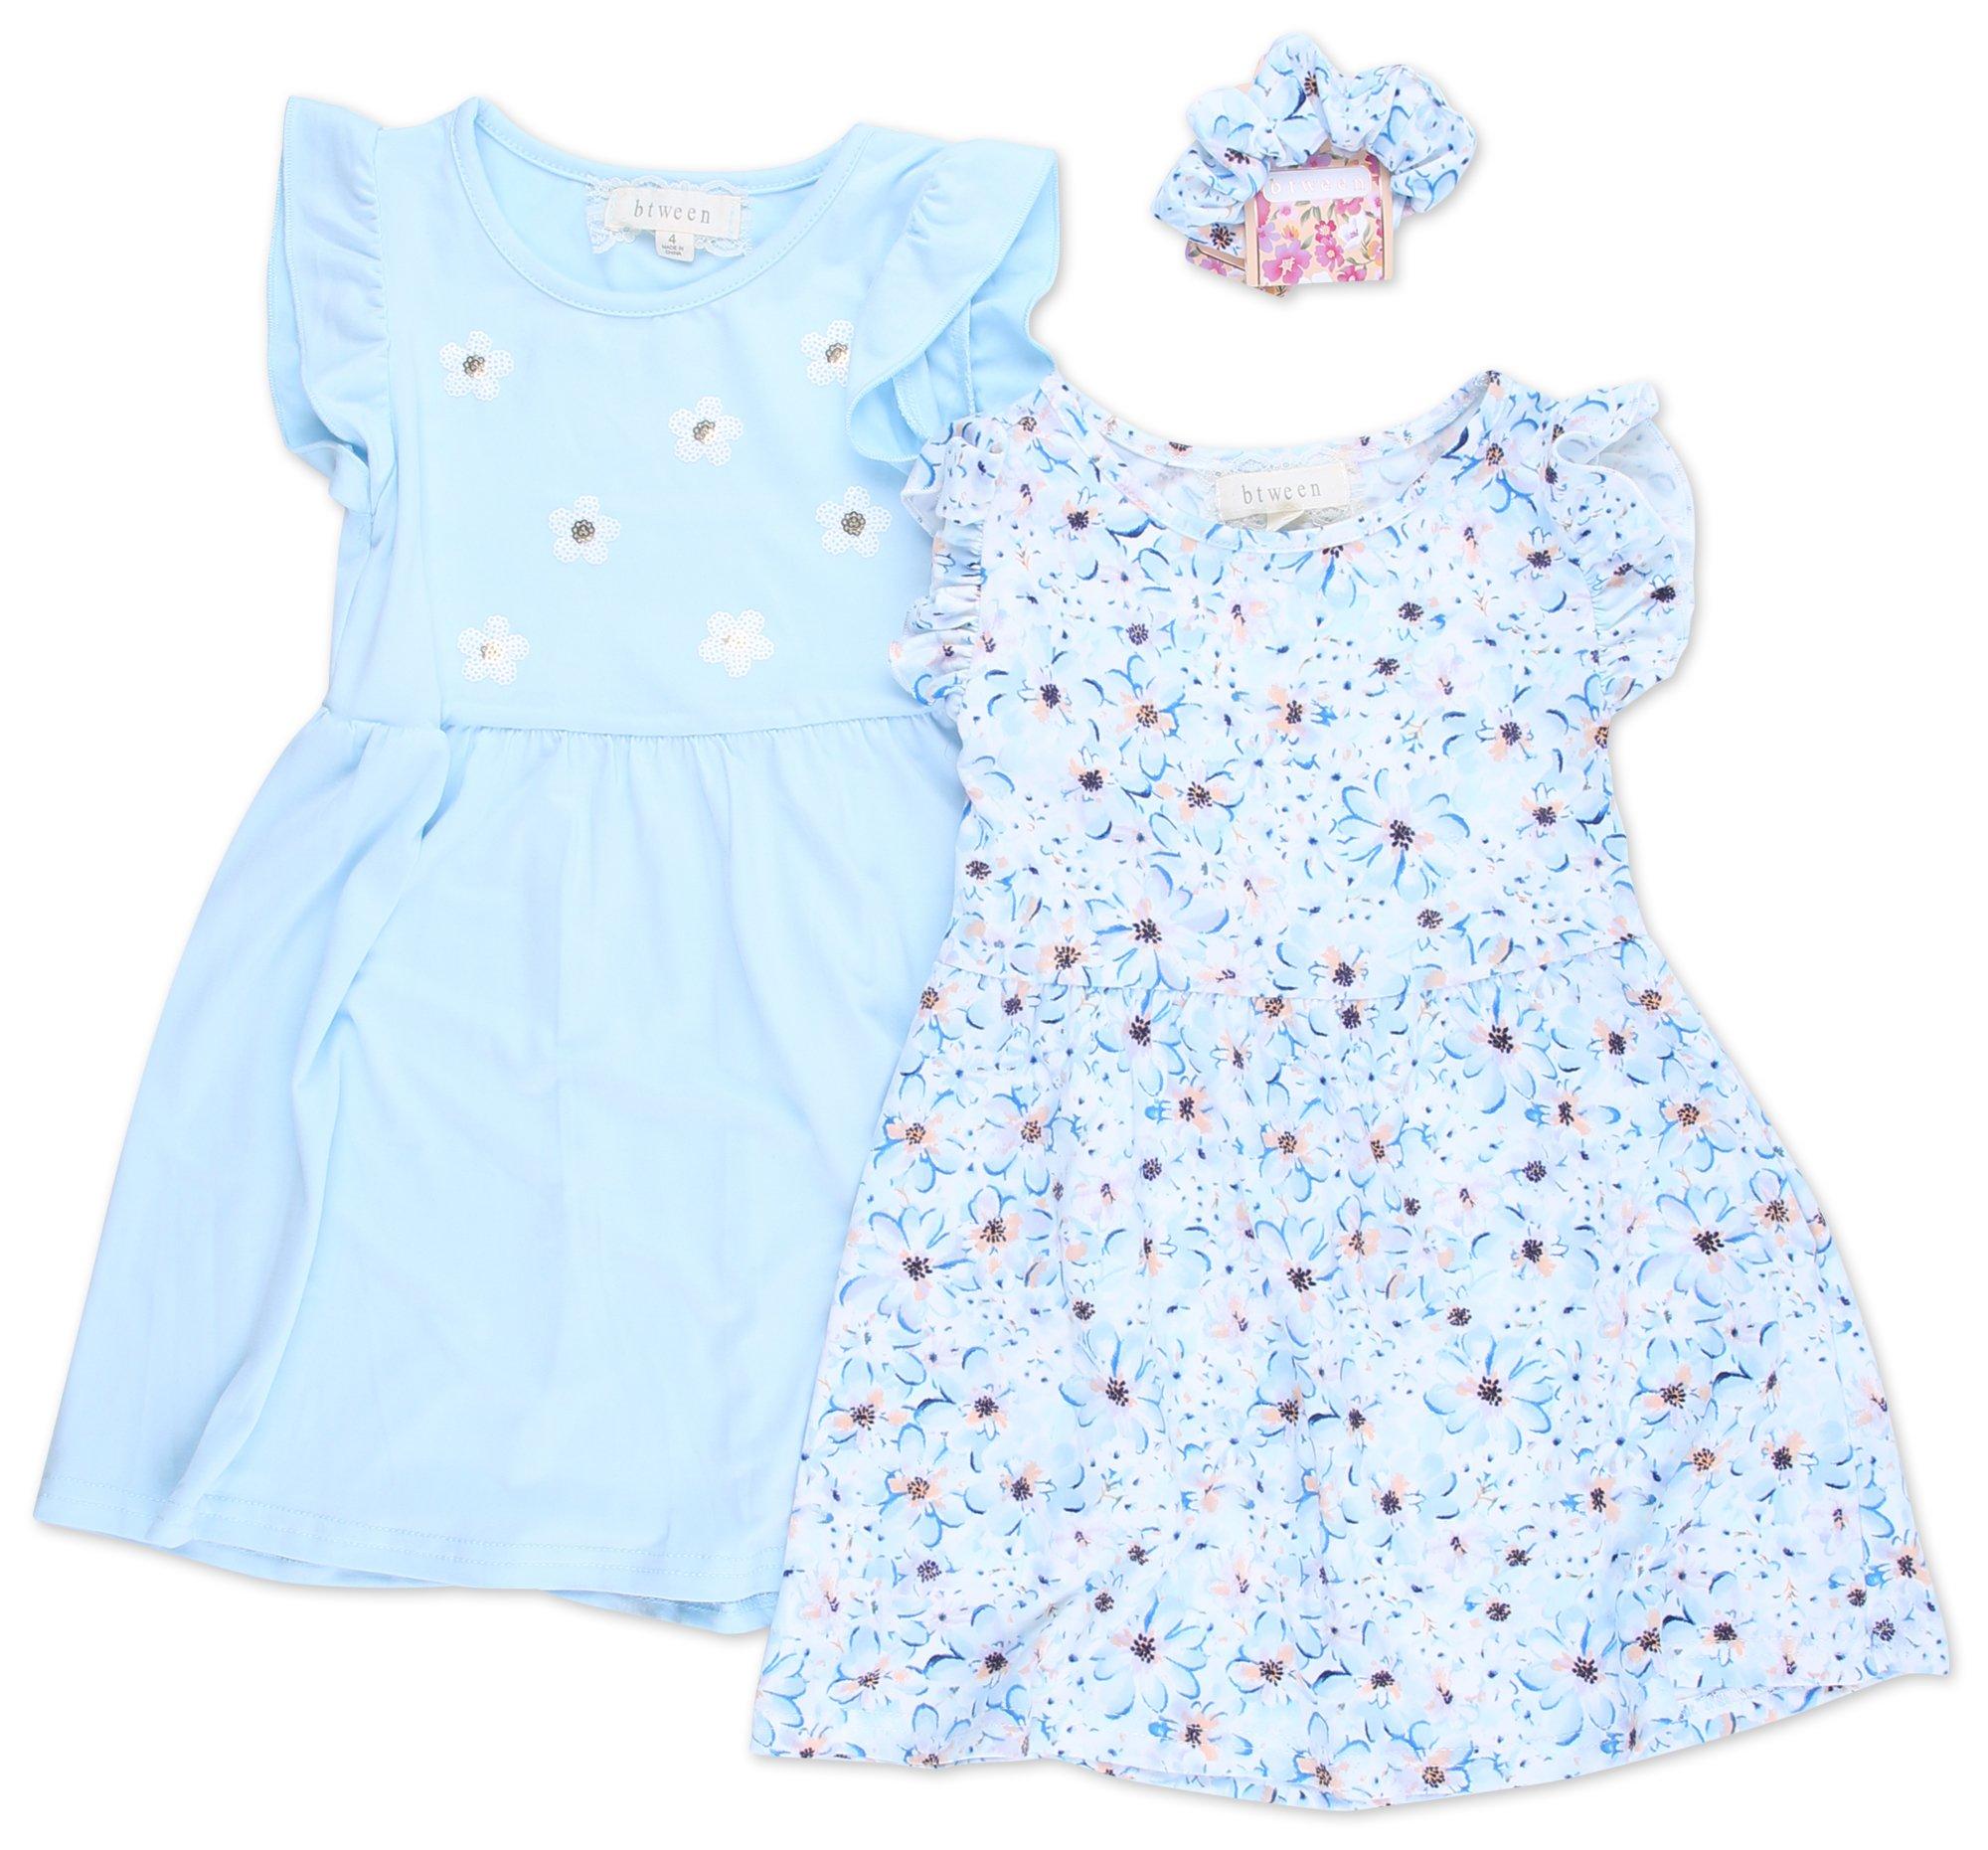 Little Girls 3 Pc Dress Set